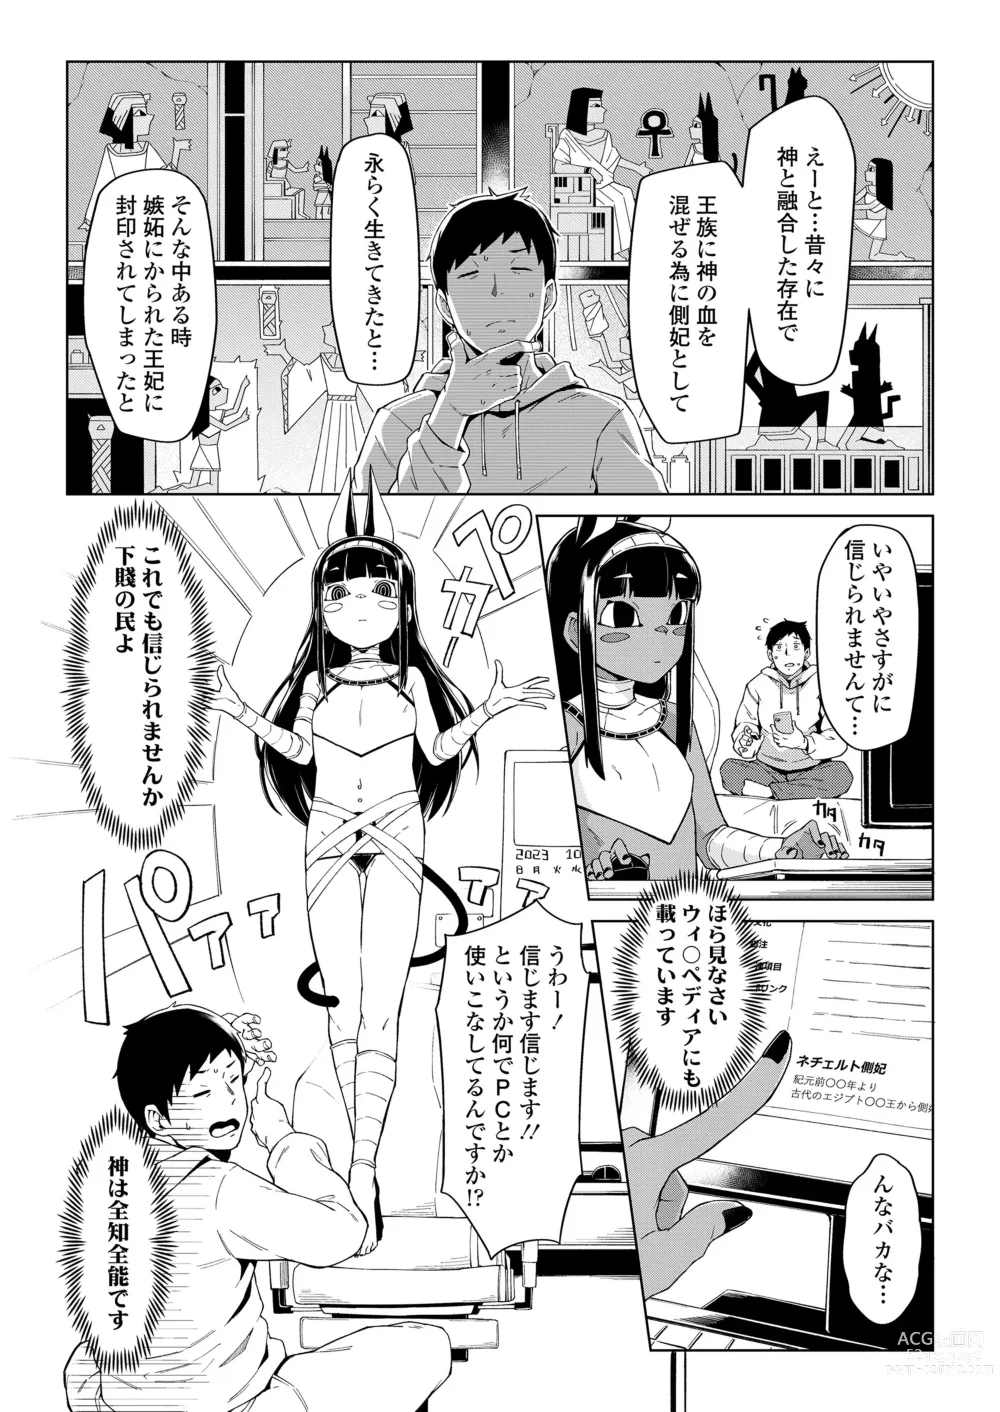 Page 4 of manga Towako Oboro Emaki 13